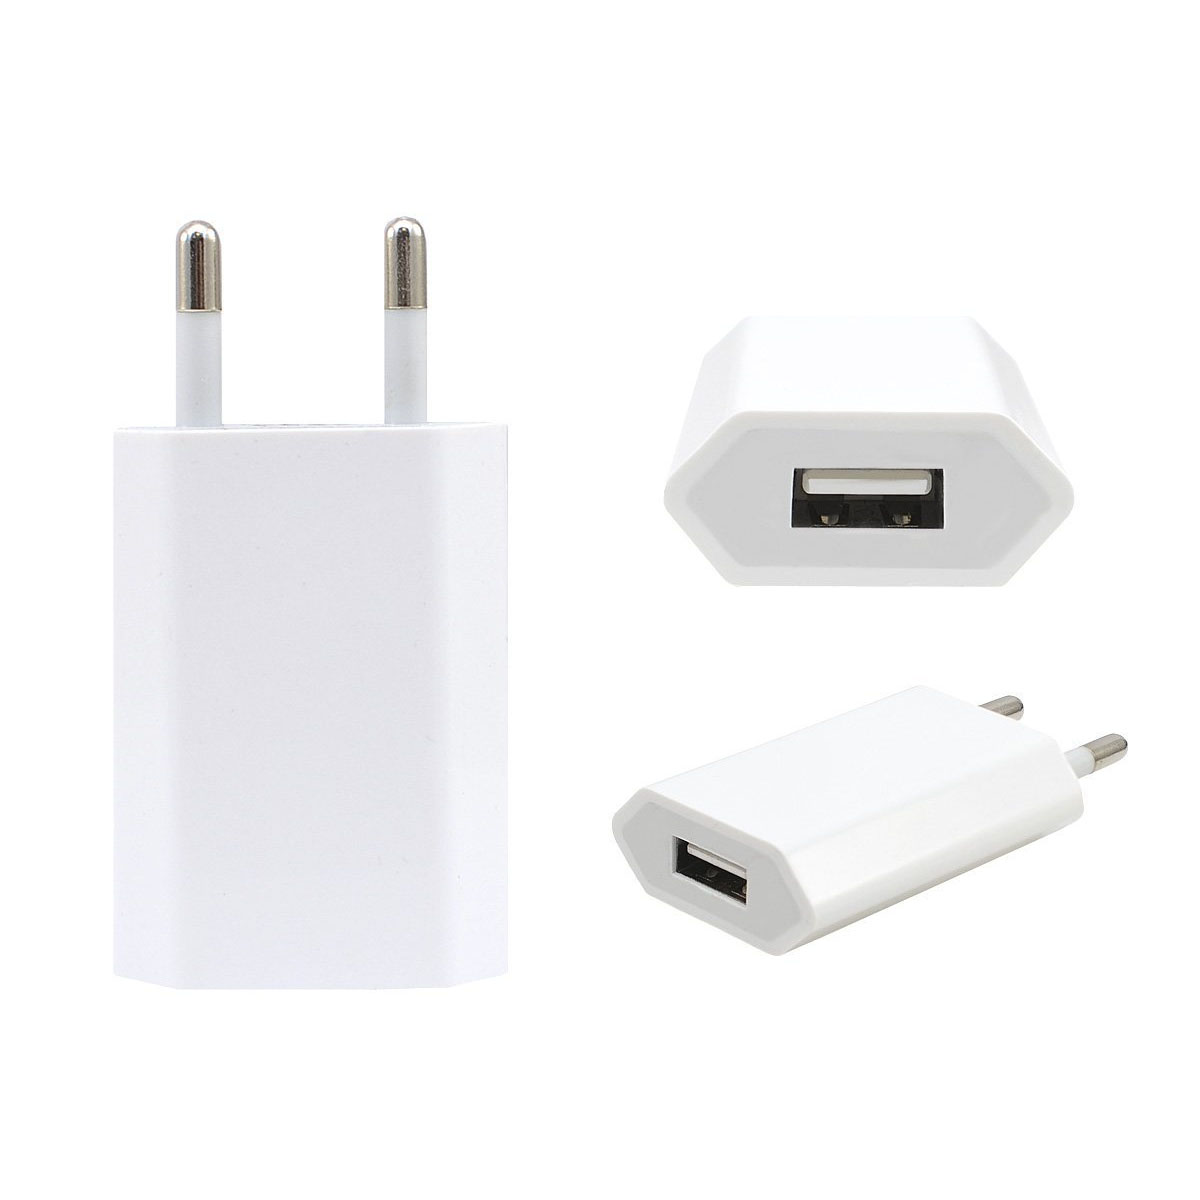 СЗУ (Сетевое зарядное устройство) для APPLE, 1 USB, 5W (5V-1A), цвет белый